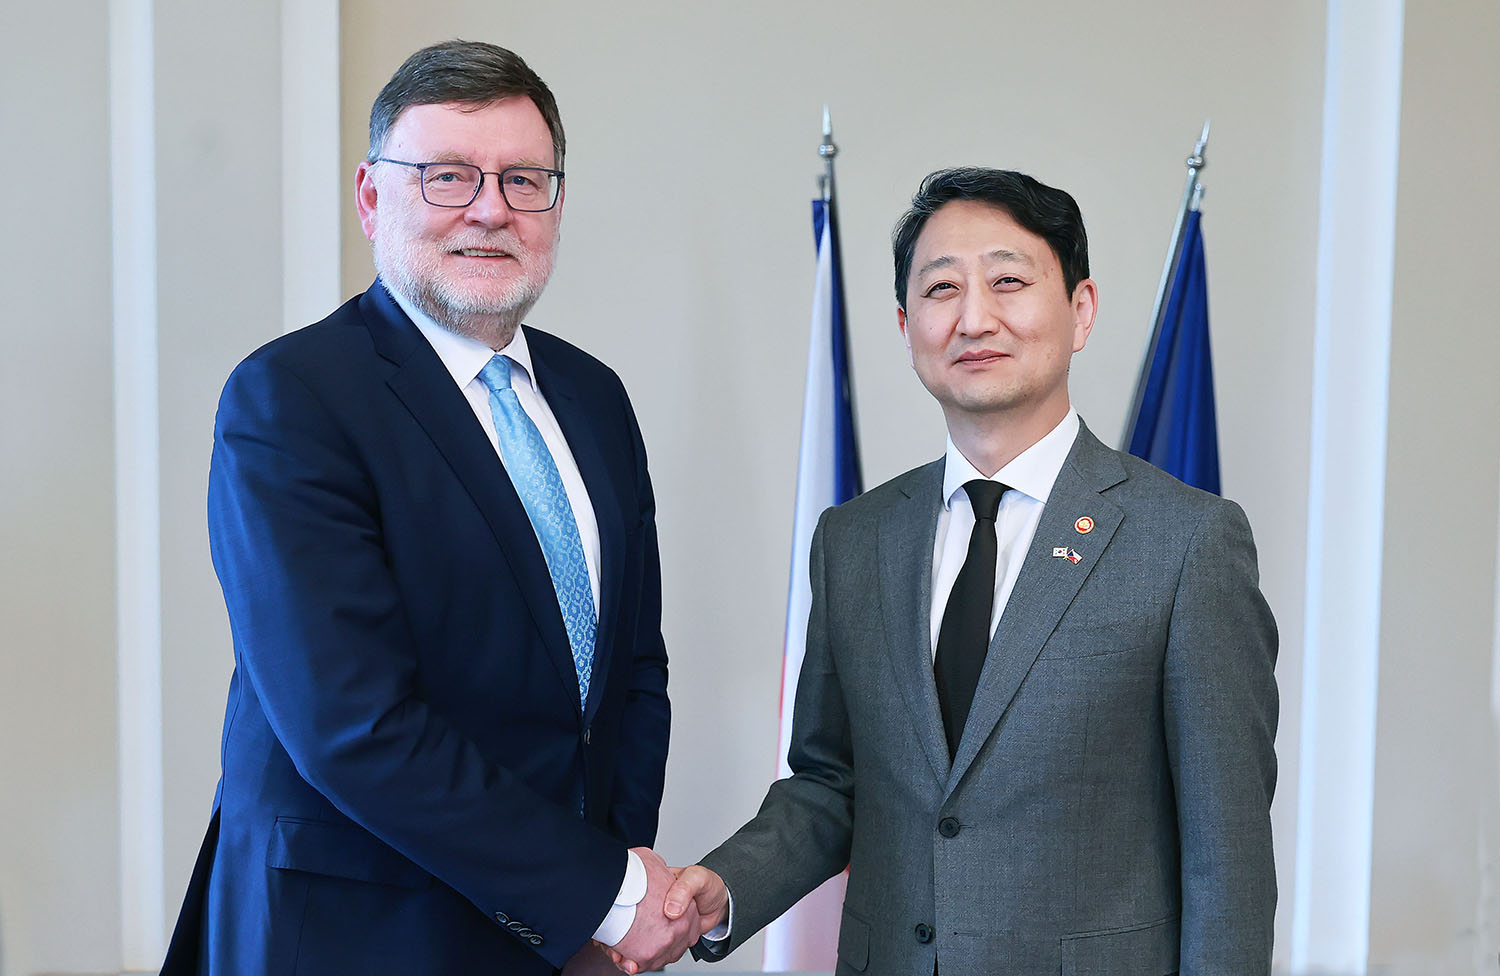 Minister meets Czech Finance Minister